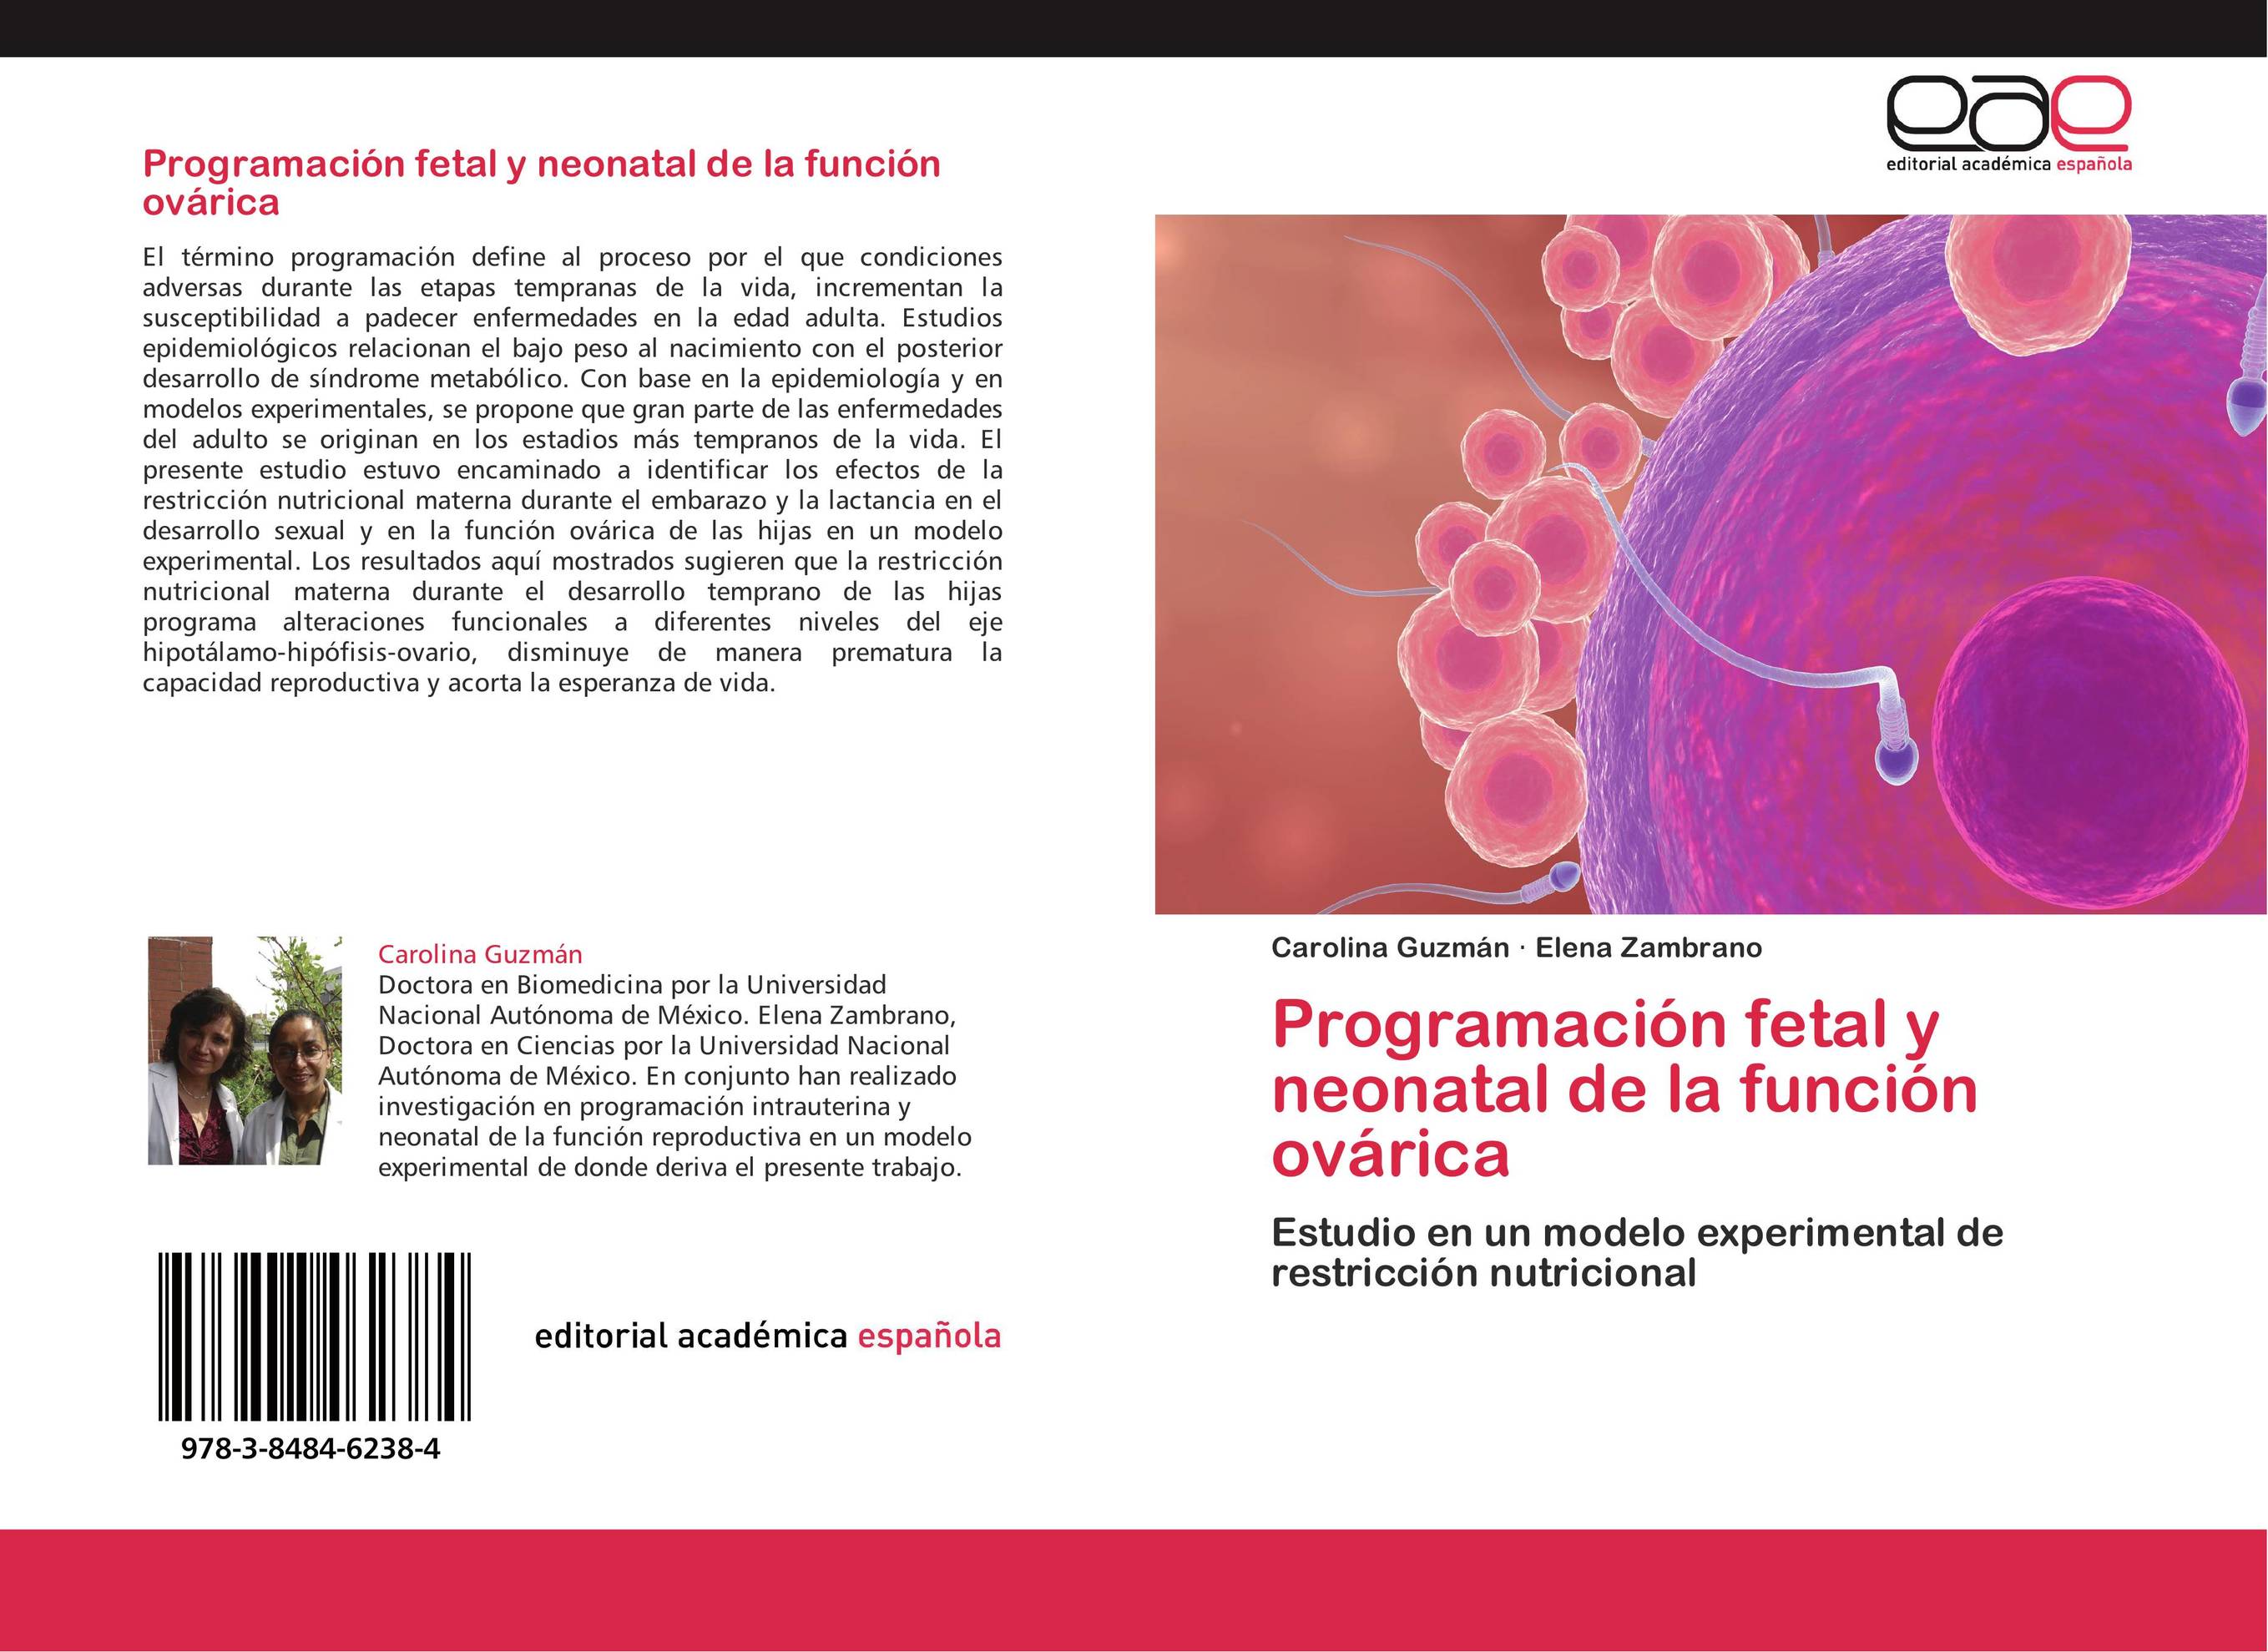 Programación fetal y neonatal de la función ovárica